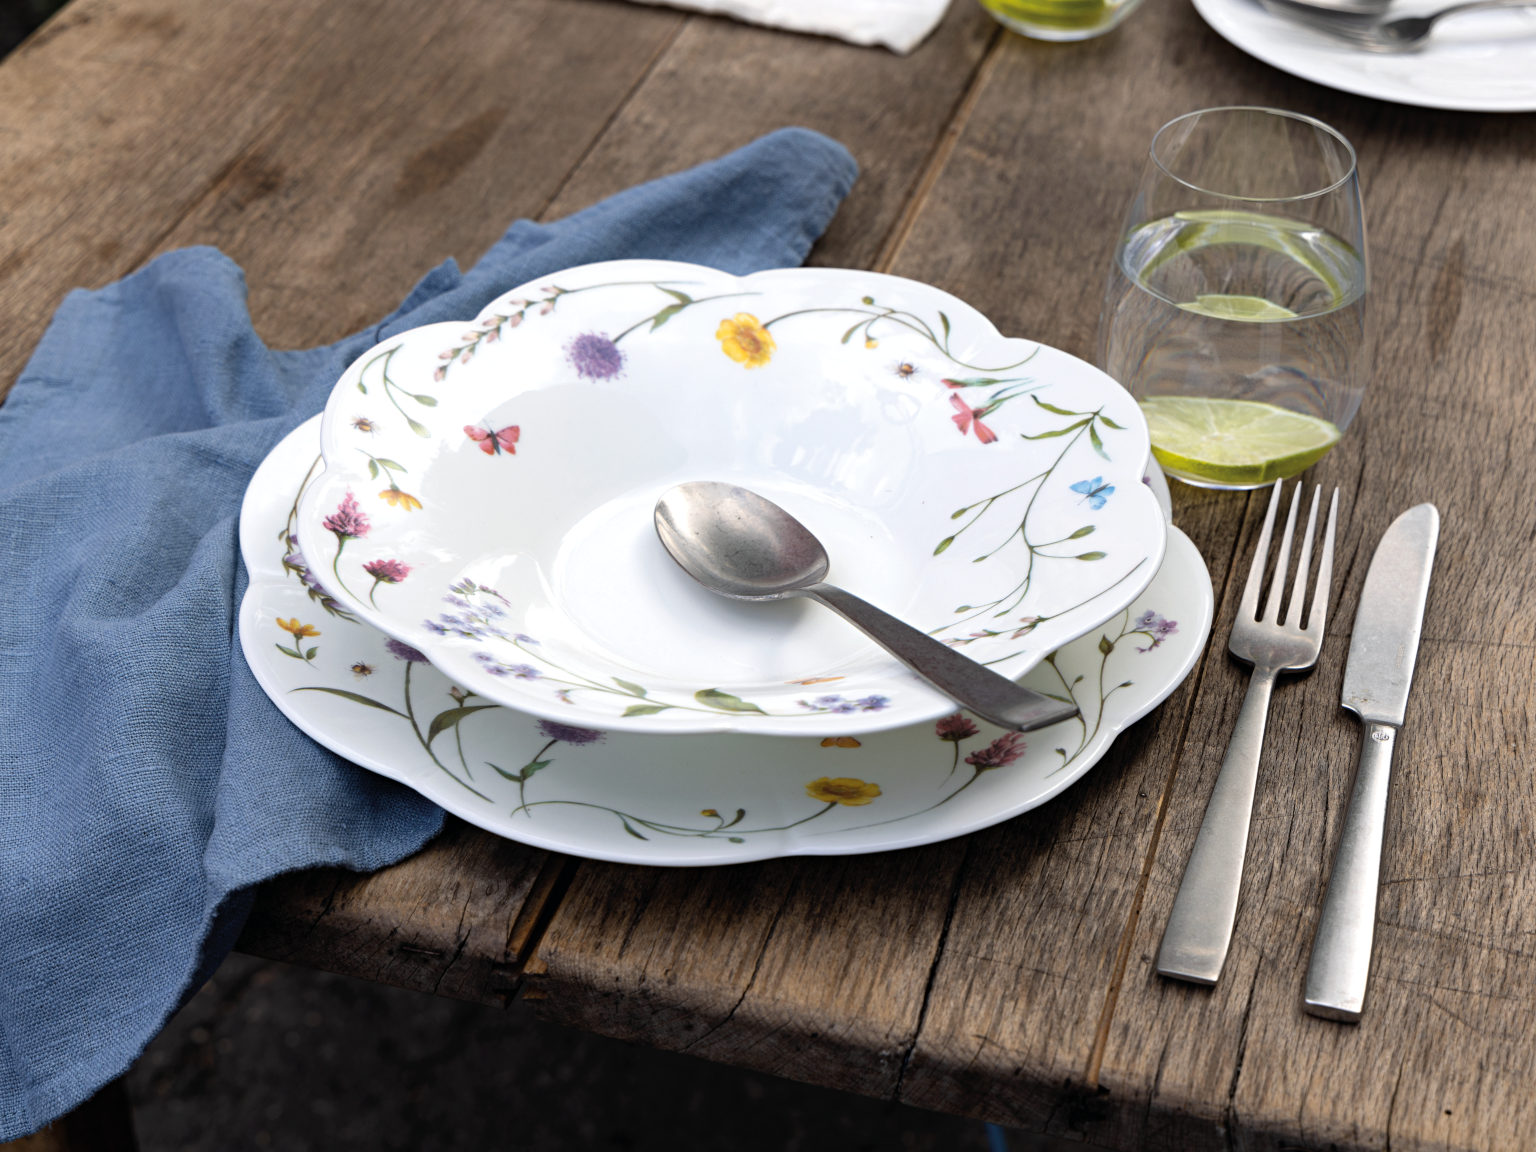 Hutschenreuther Nora Spring Vibes Schale auf Teller mit floralem Dekor auf Holztisch